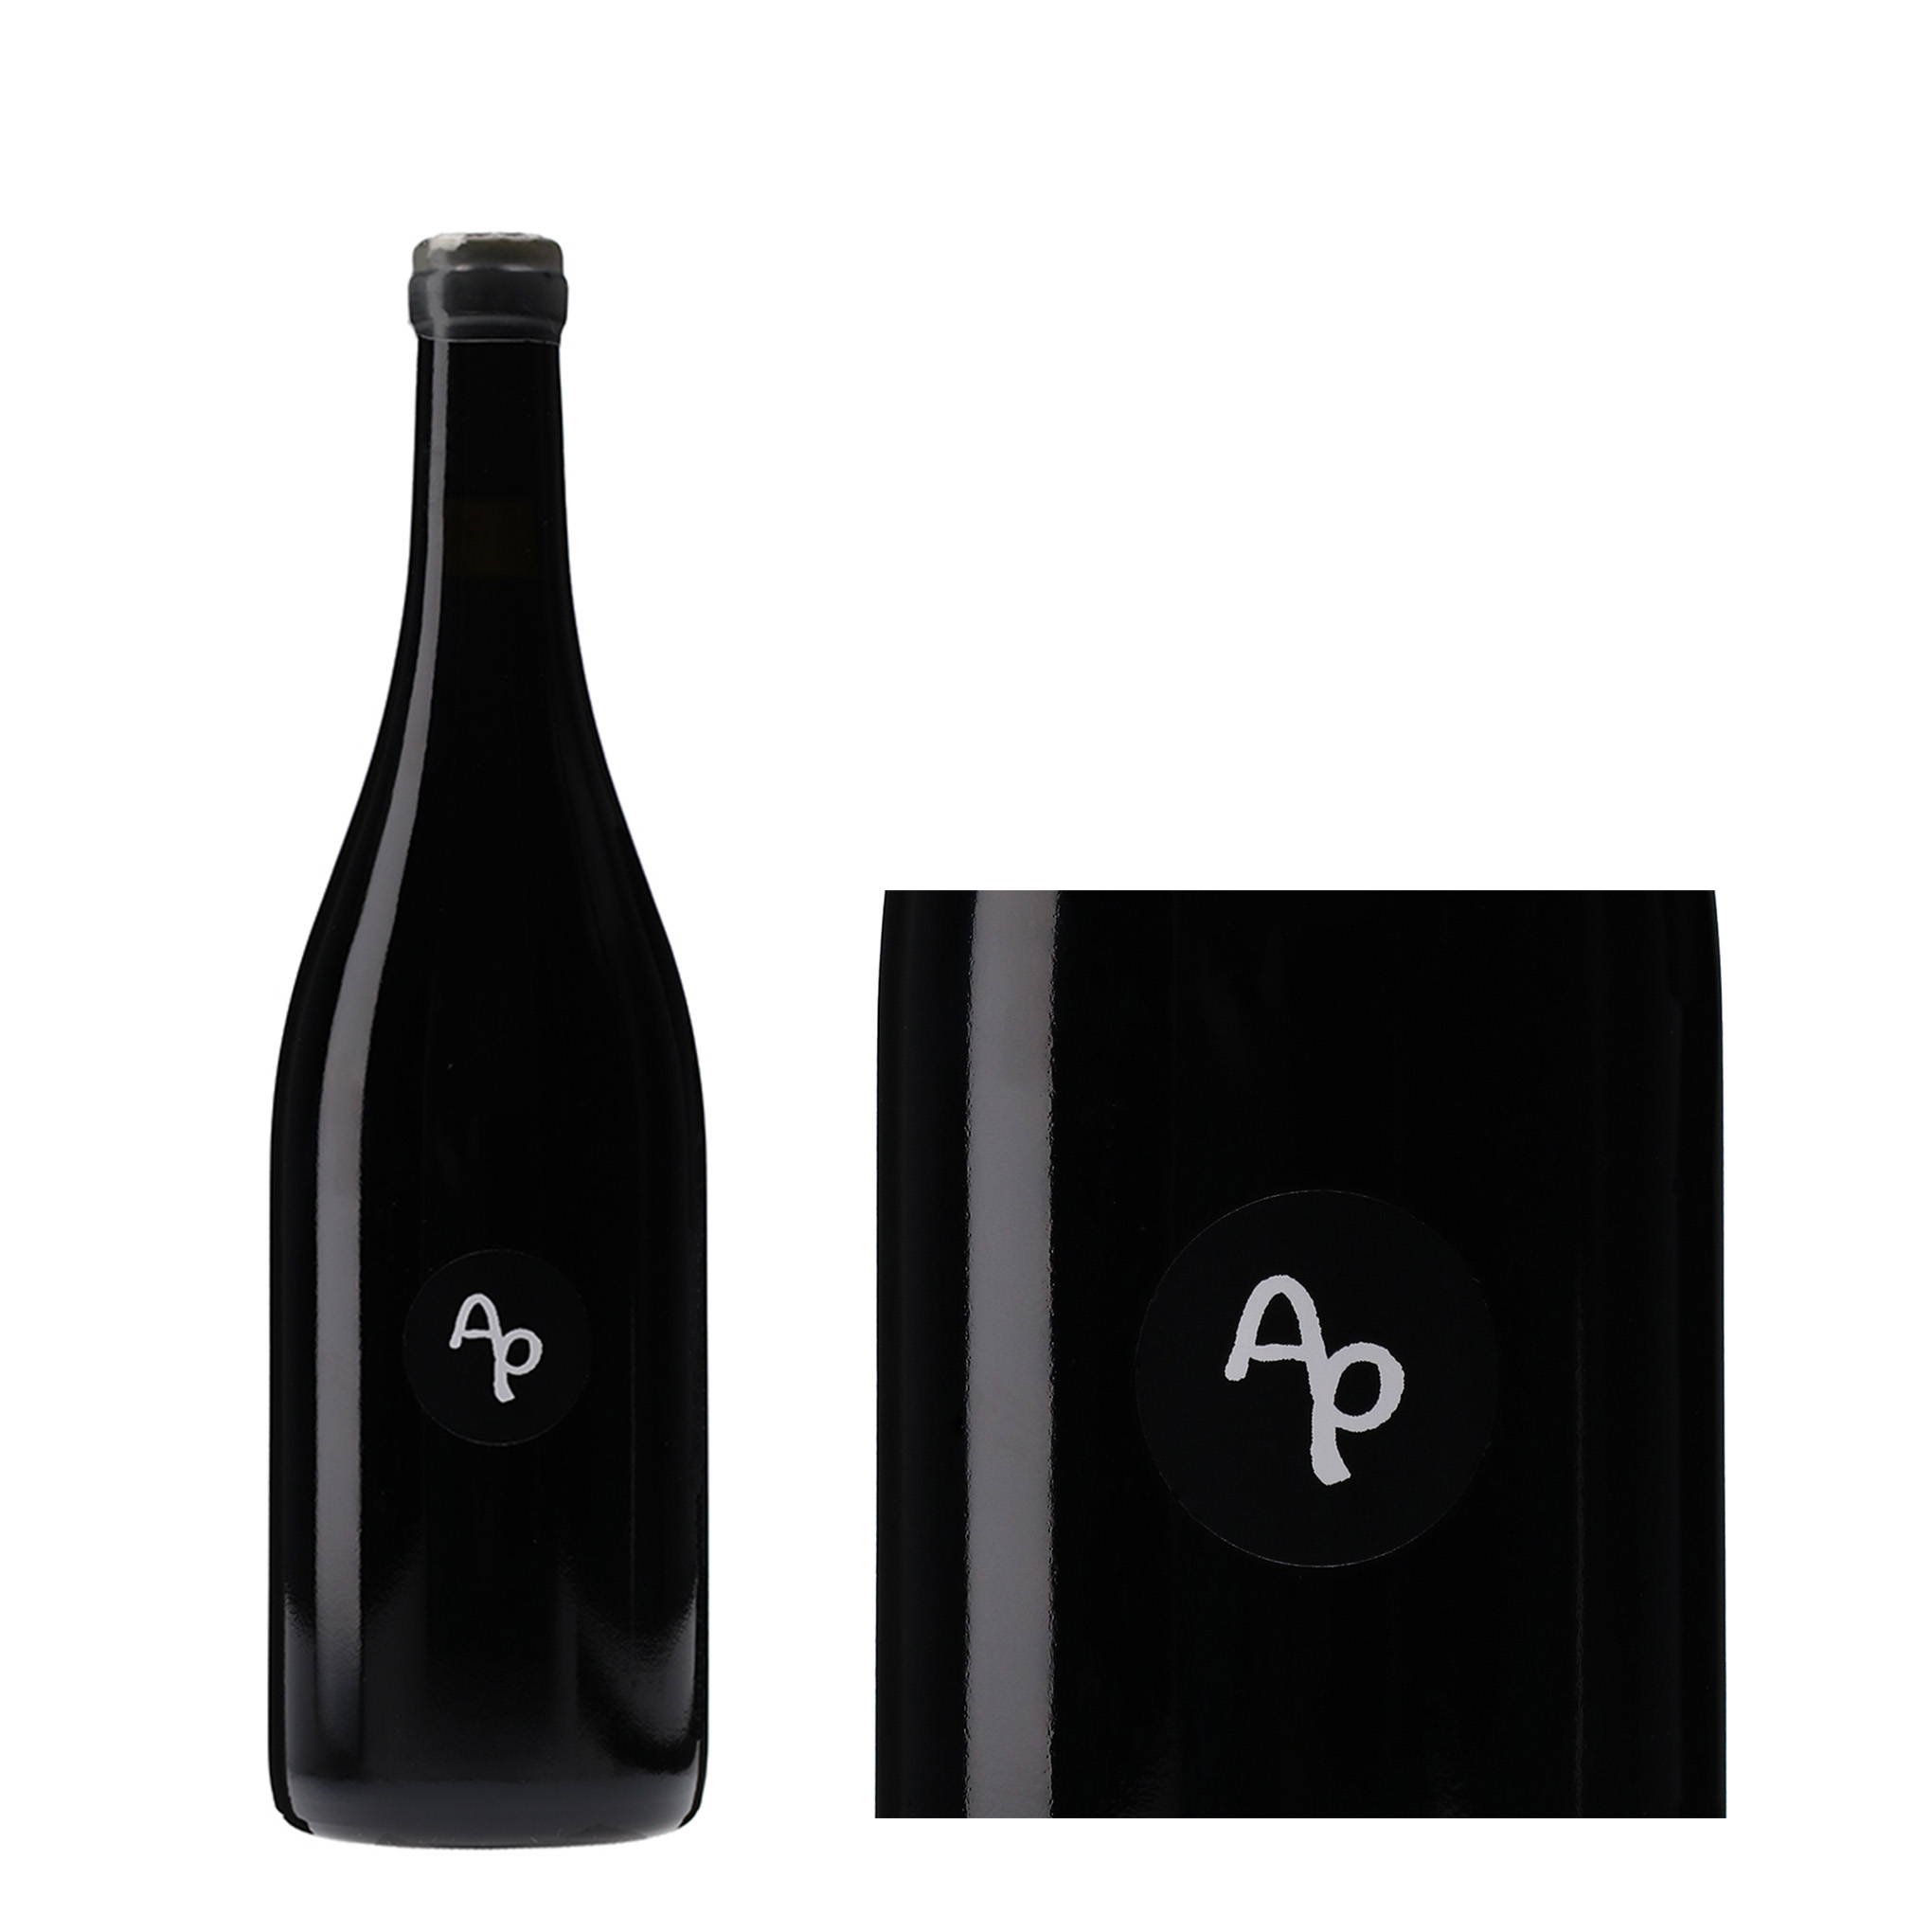 「Apassimento(アパッシメント)＝陰干し」したマスカット・ベーリーAとネオマスカットを混醸！『Fattoria AL FIORE』の実験的な赤ワイン『Apassimento 2020』。